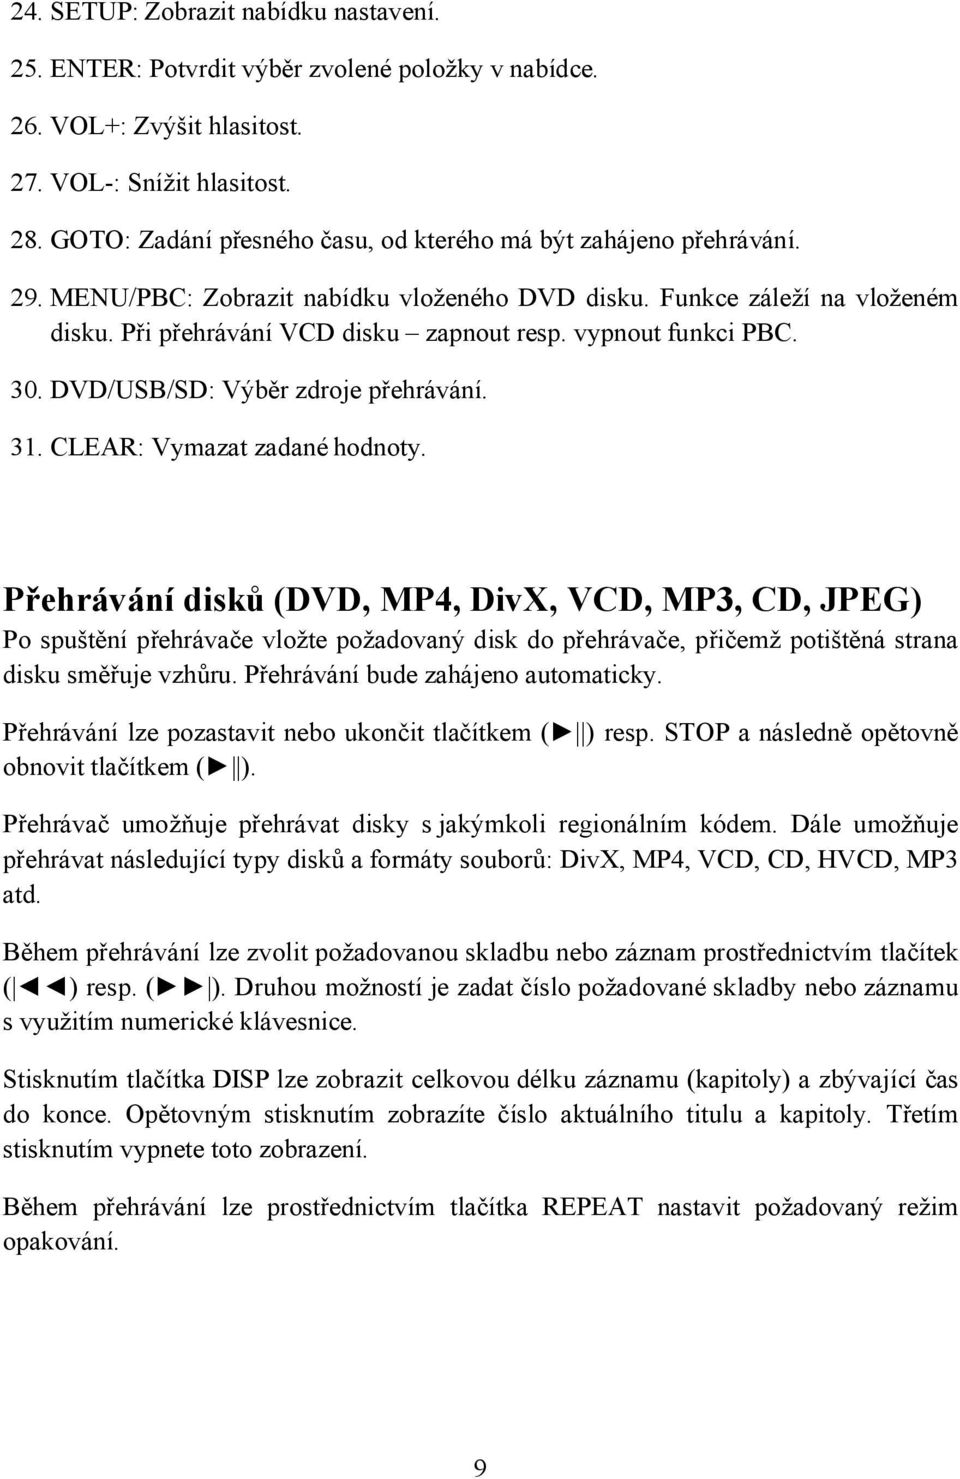 vypnout funkci PBC. 30. DVD/USB/SD: Výběr zdroje přehrávání. 31. CLEAR: Vymazat zadané hodnoty.